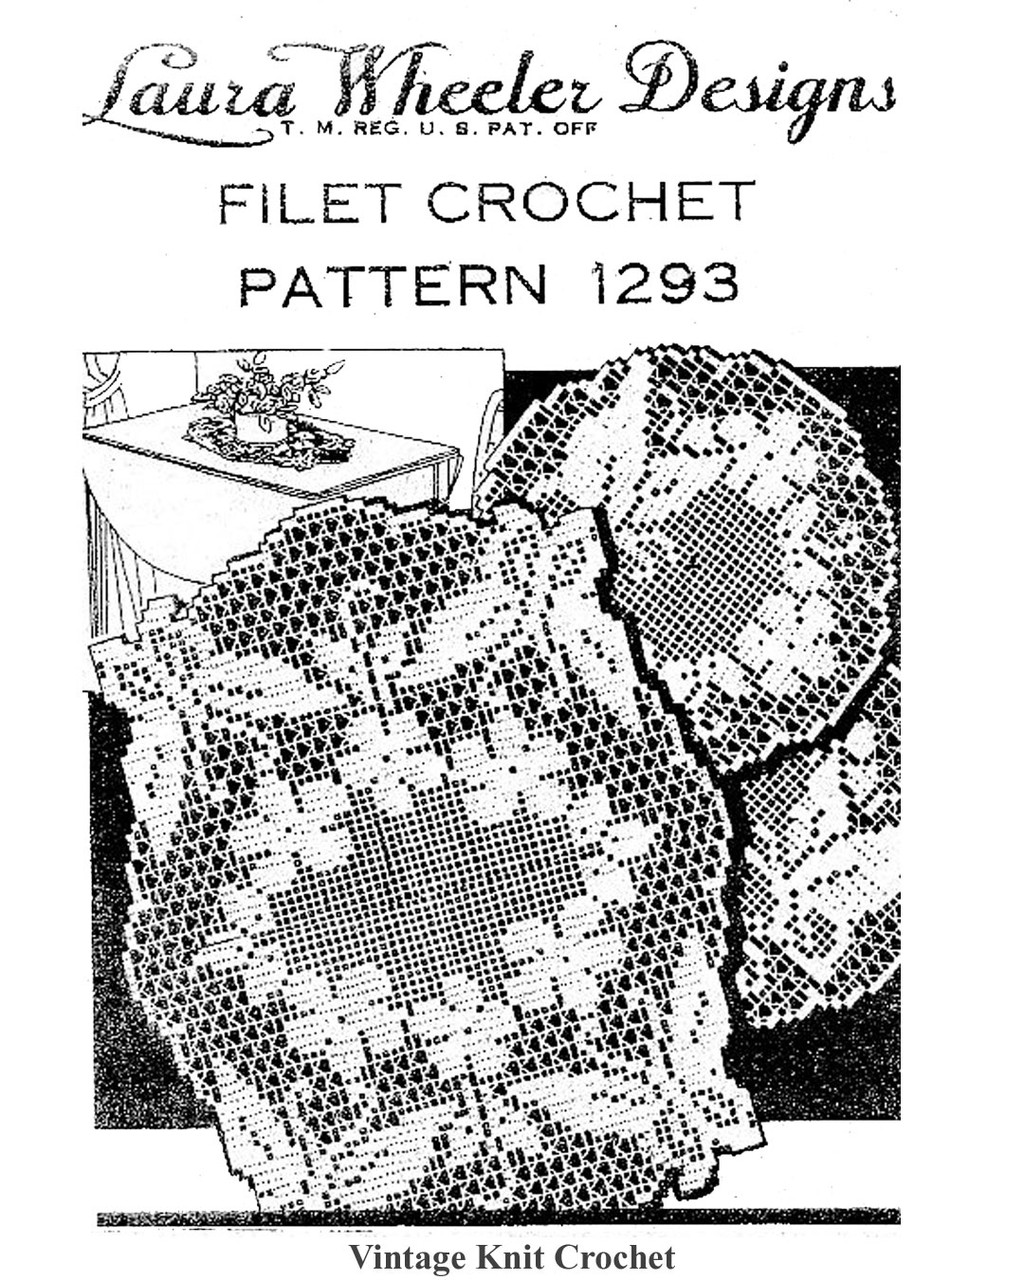 Filet Crochet Butterfly in Flowers Doily Pattern Laura wheeler Design 1293